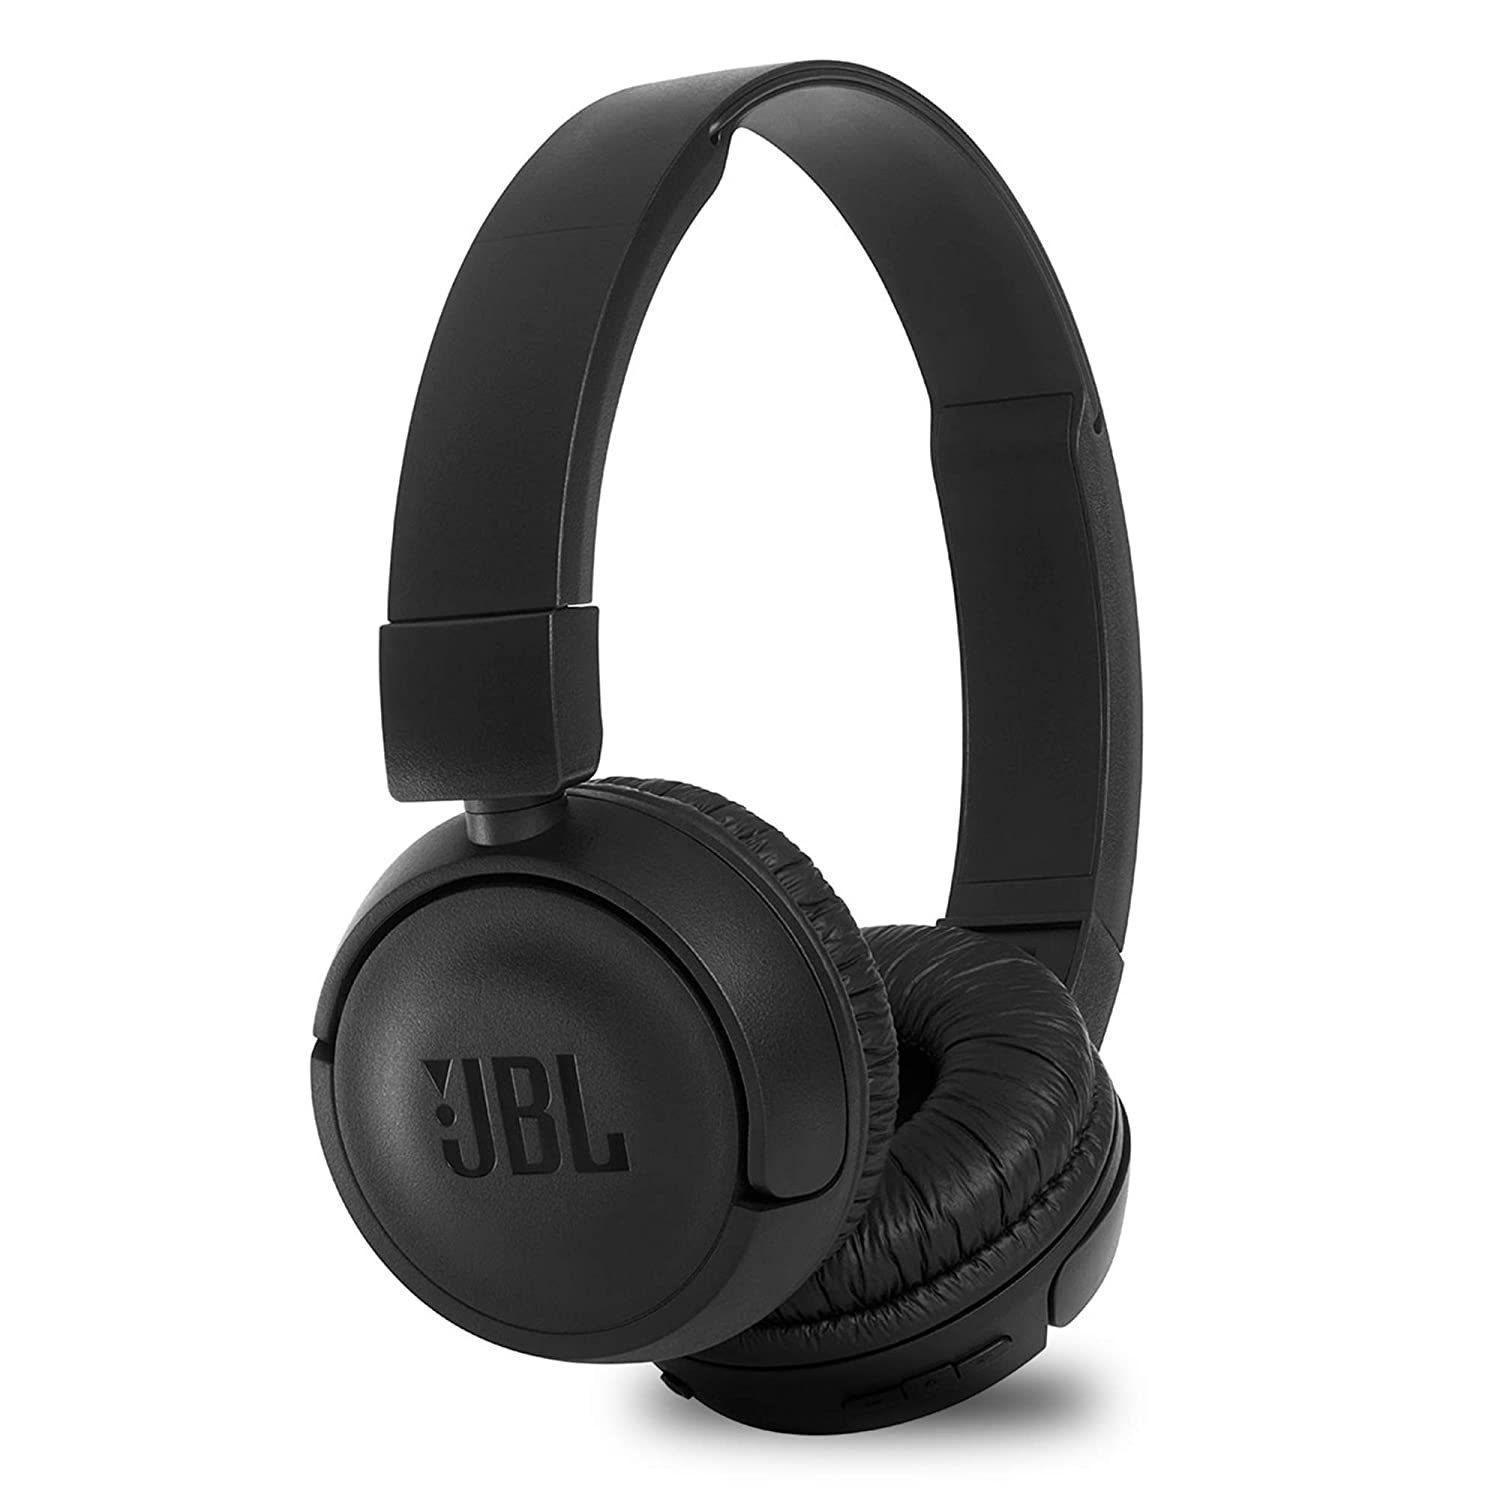 Best Earbuds Deal: अमेजन से ब्रांड डेज में JBL के ईयरबड्स खरीदें 60% तक के डिस्काउंट पर.